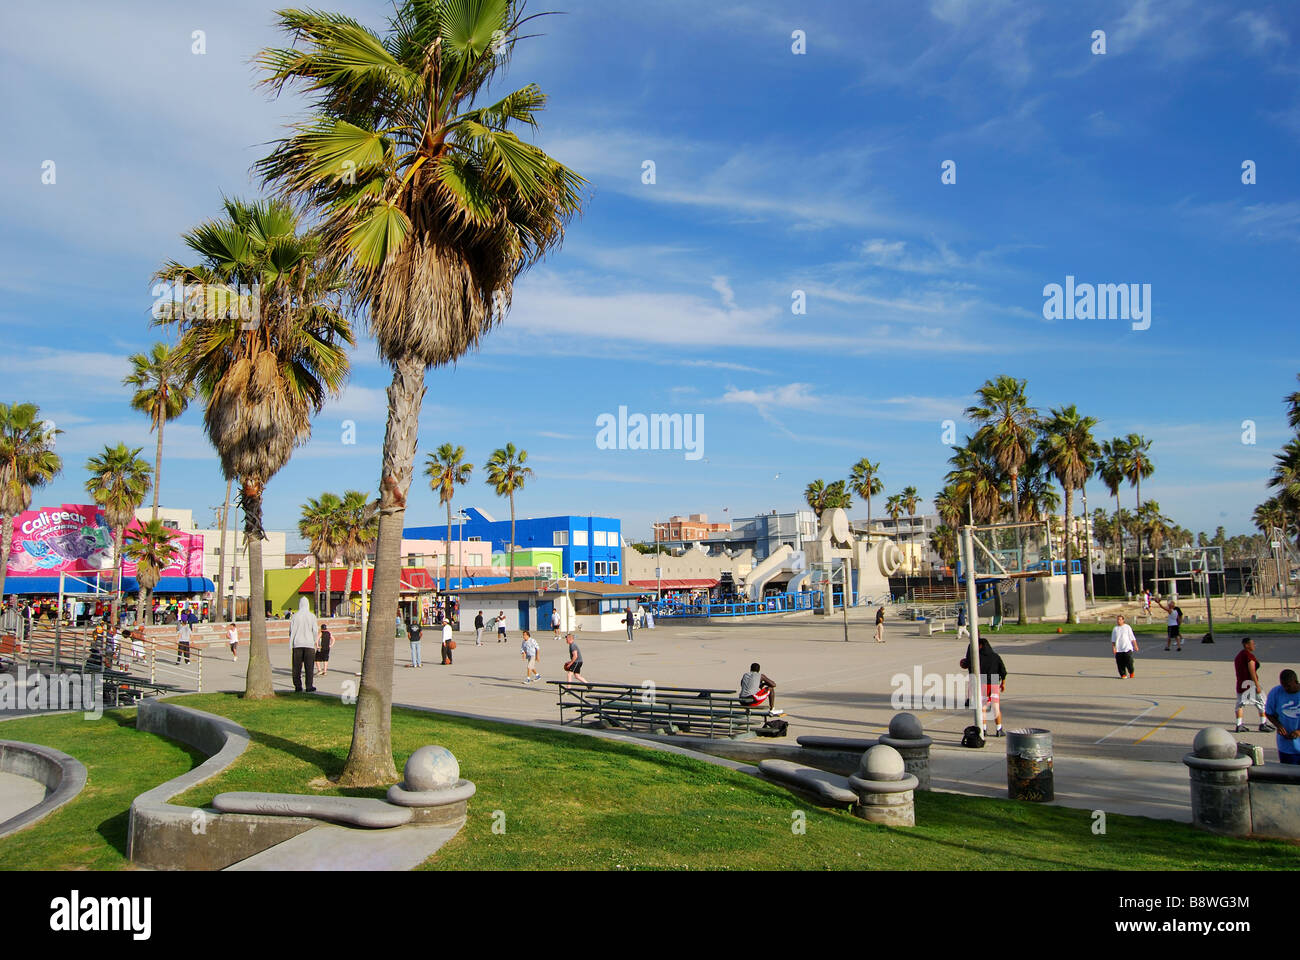 Jeux de Basket-ball, l'Ocean Front Walk, Venice Beach, Los Angeles, Californie, États-Unis d'Amérique Banque D'Images